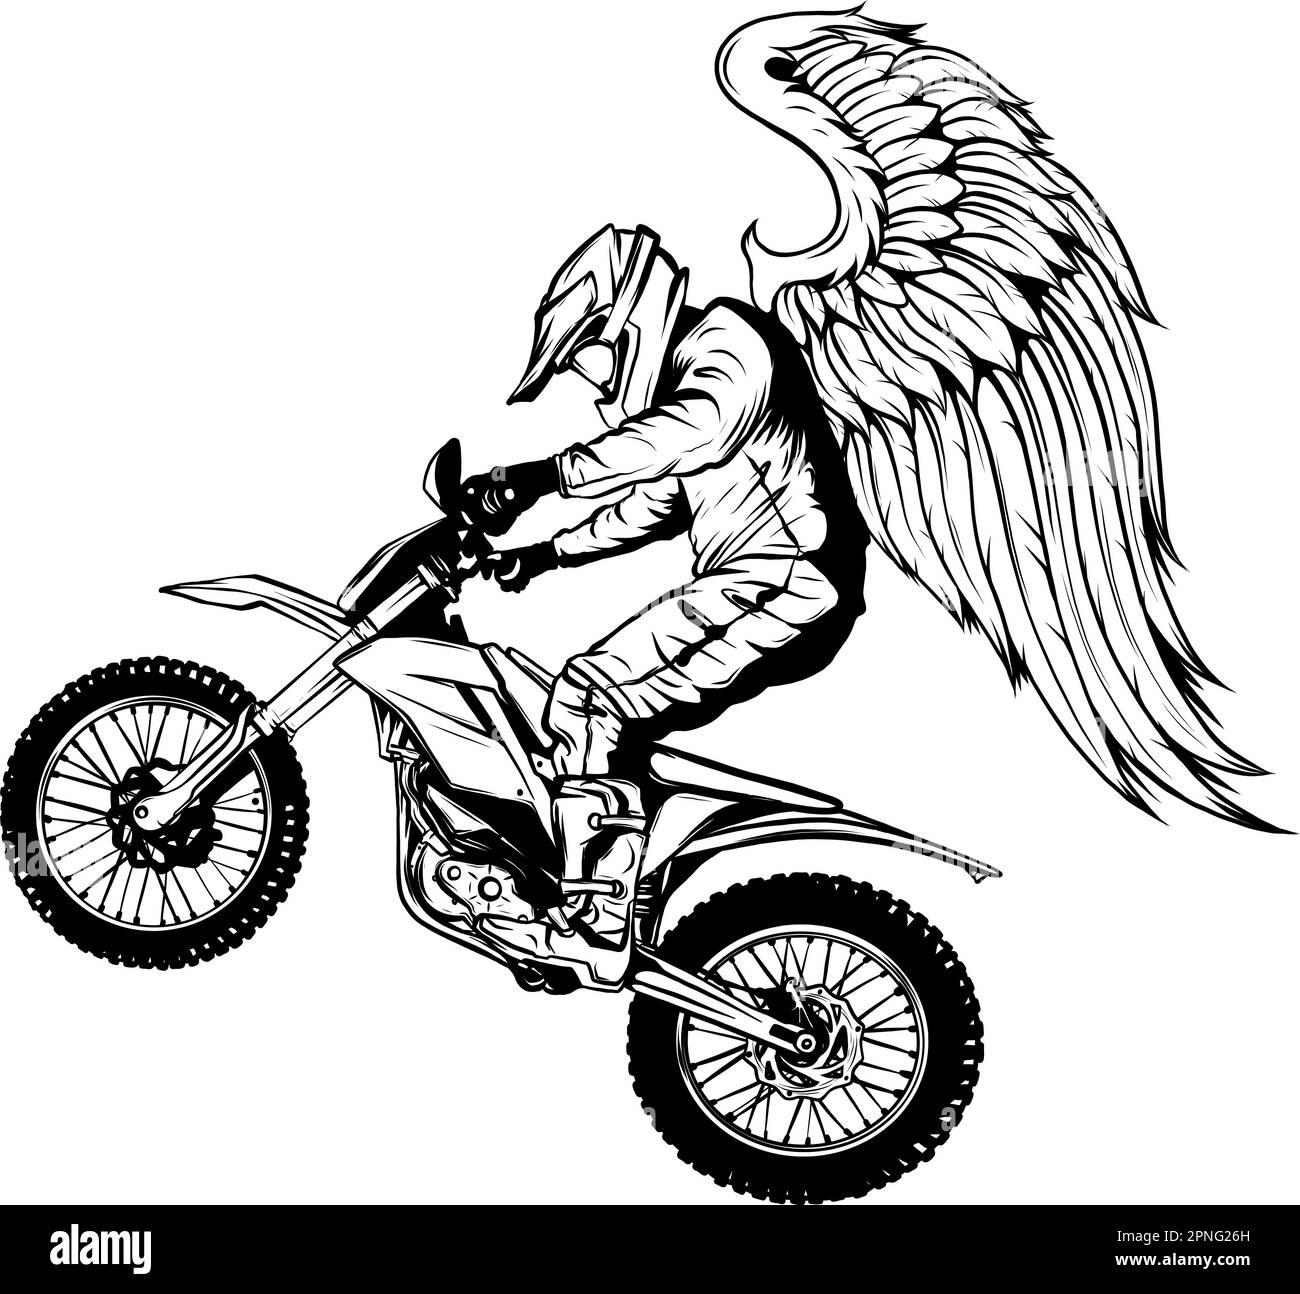 monochrome Motocross wing vector illustration on white background Stock ...